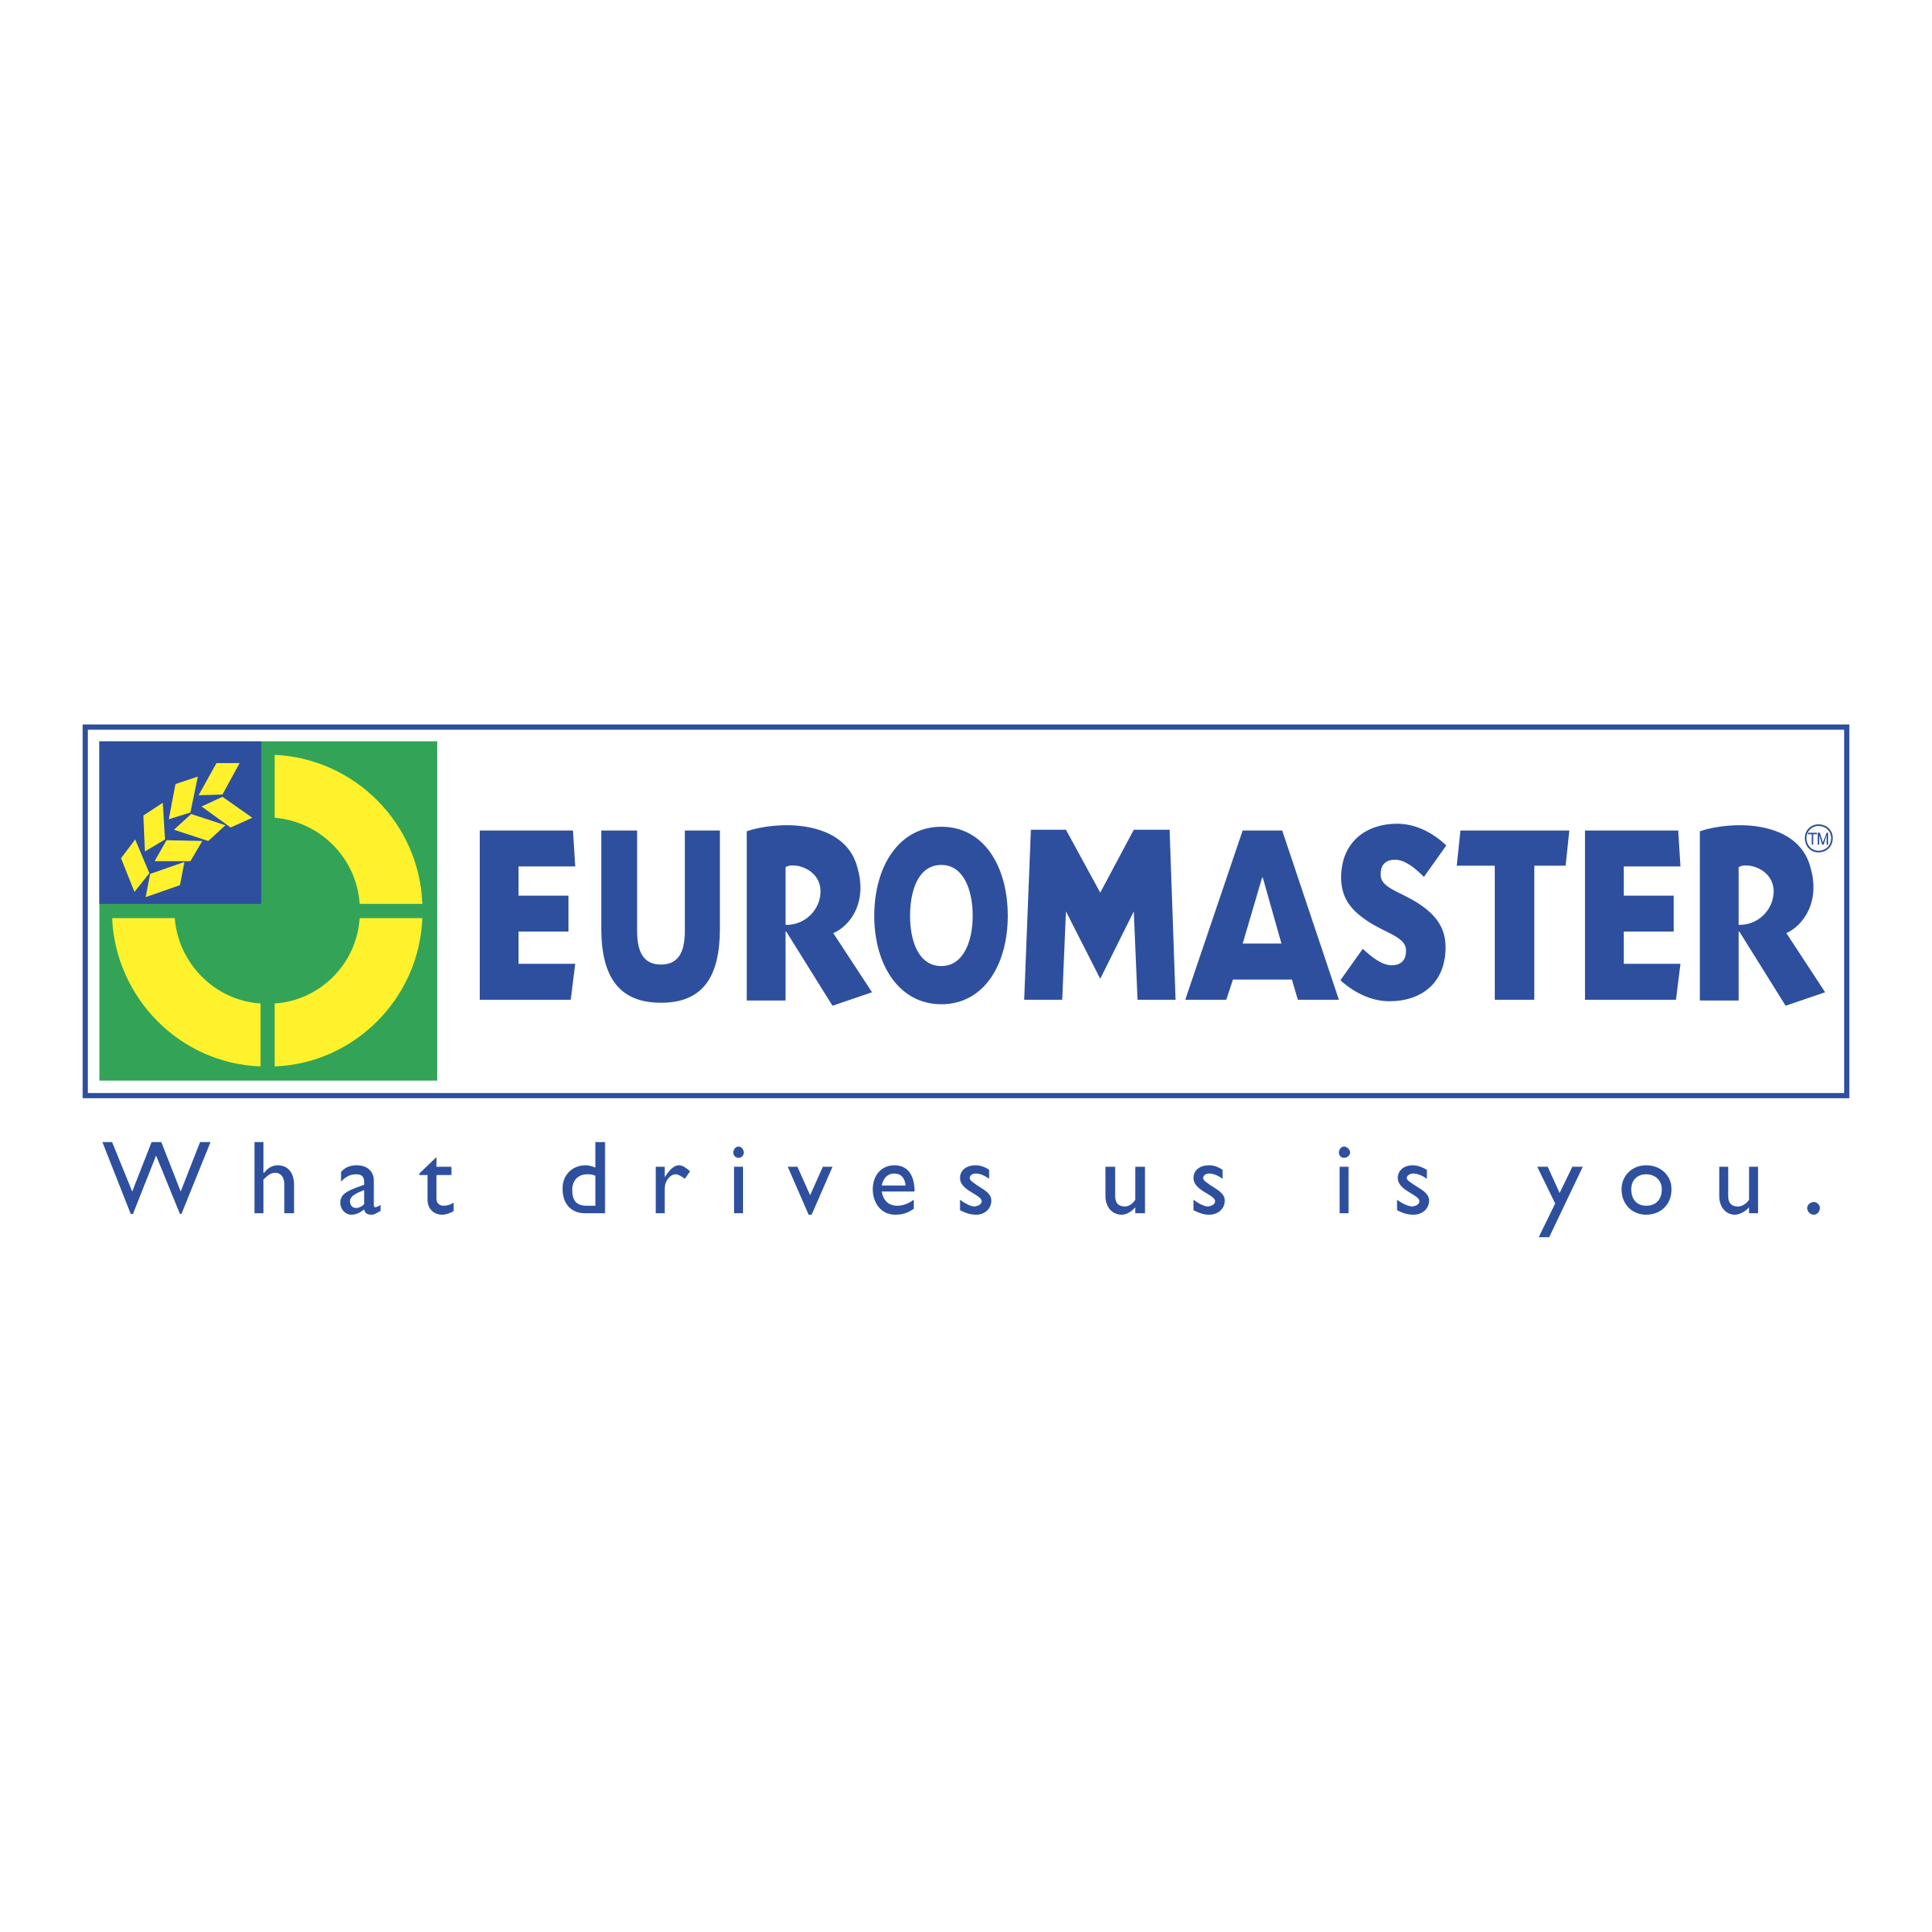 Euromaster Logo PNG Transparent & SVG Vector.